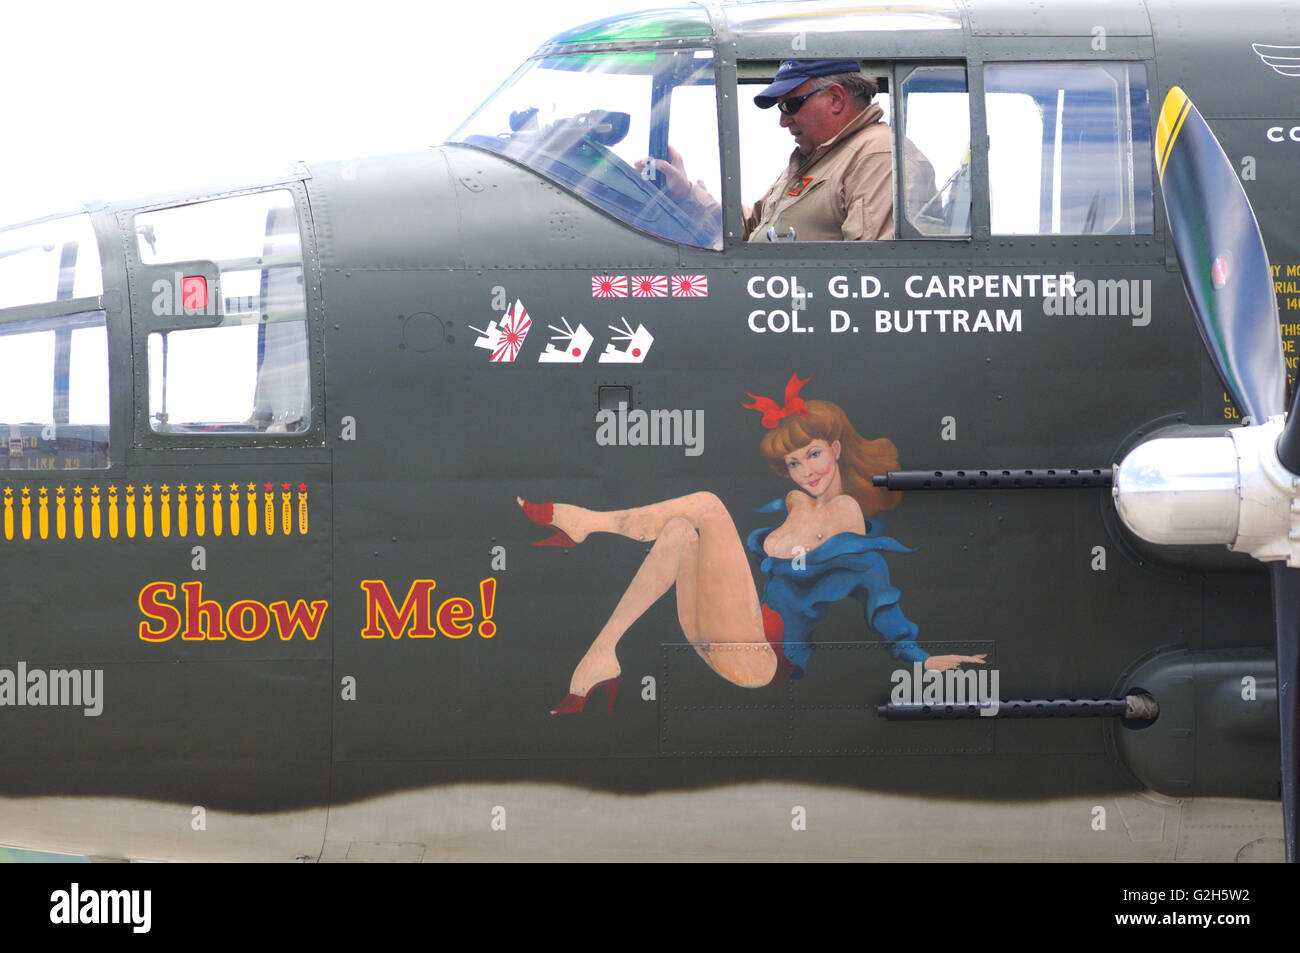 A la época de la Segunda Guerra Mundial luz bombardero B-25 con la nariz muestra de arte en un airshow Foto de stock